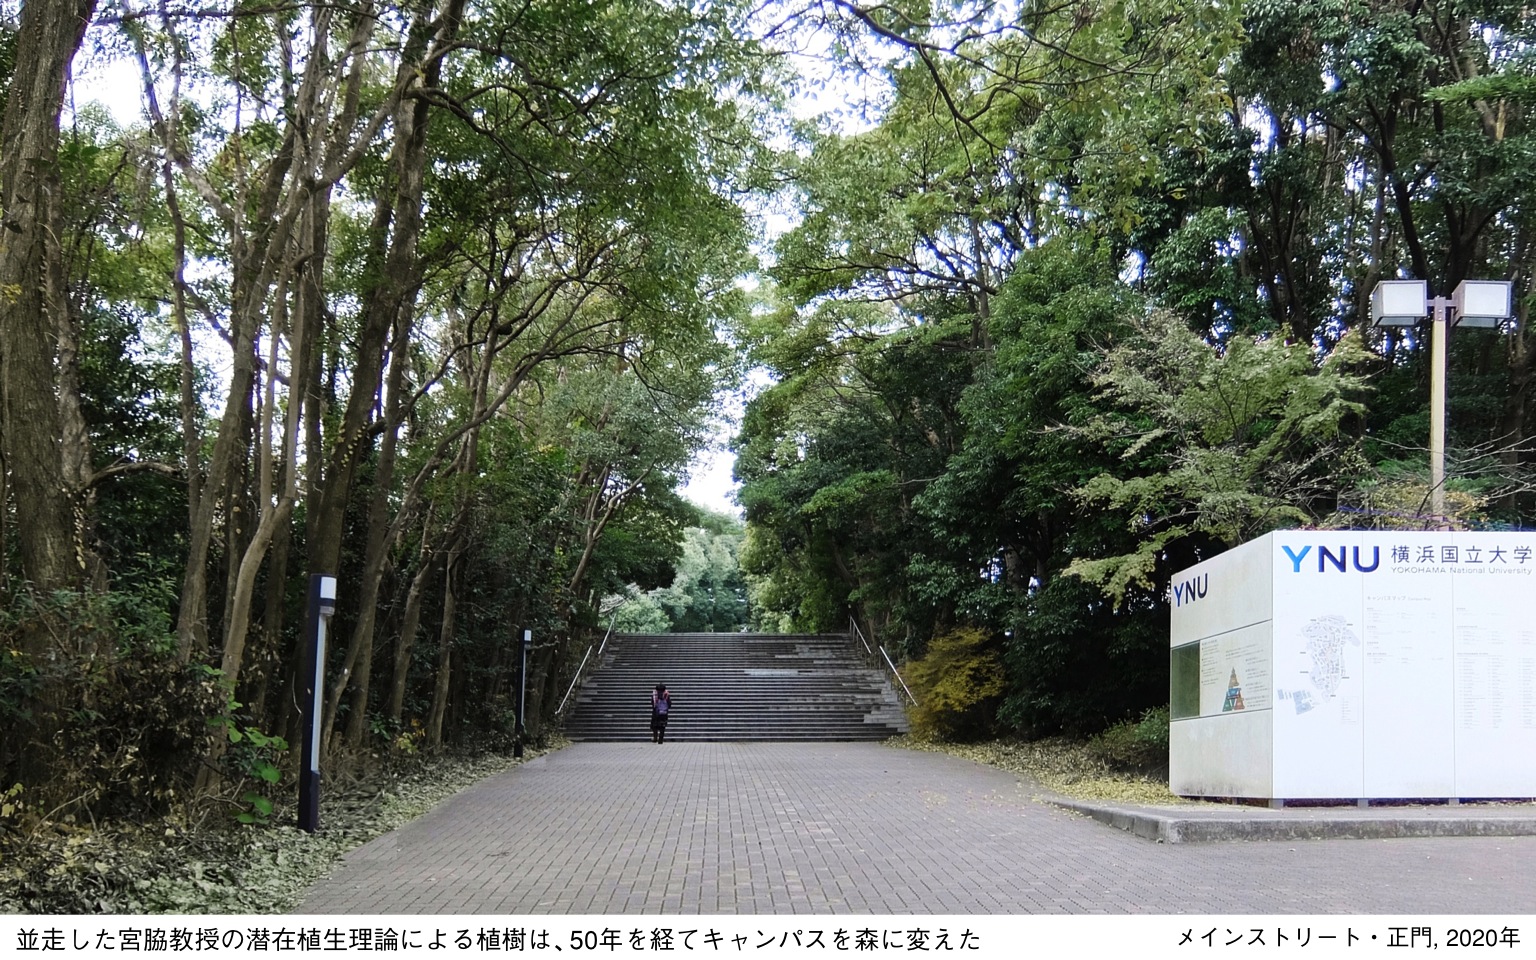 横浜国立大学西門プロジェクト, Restructuring the gates at Yokohama National University